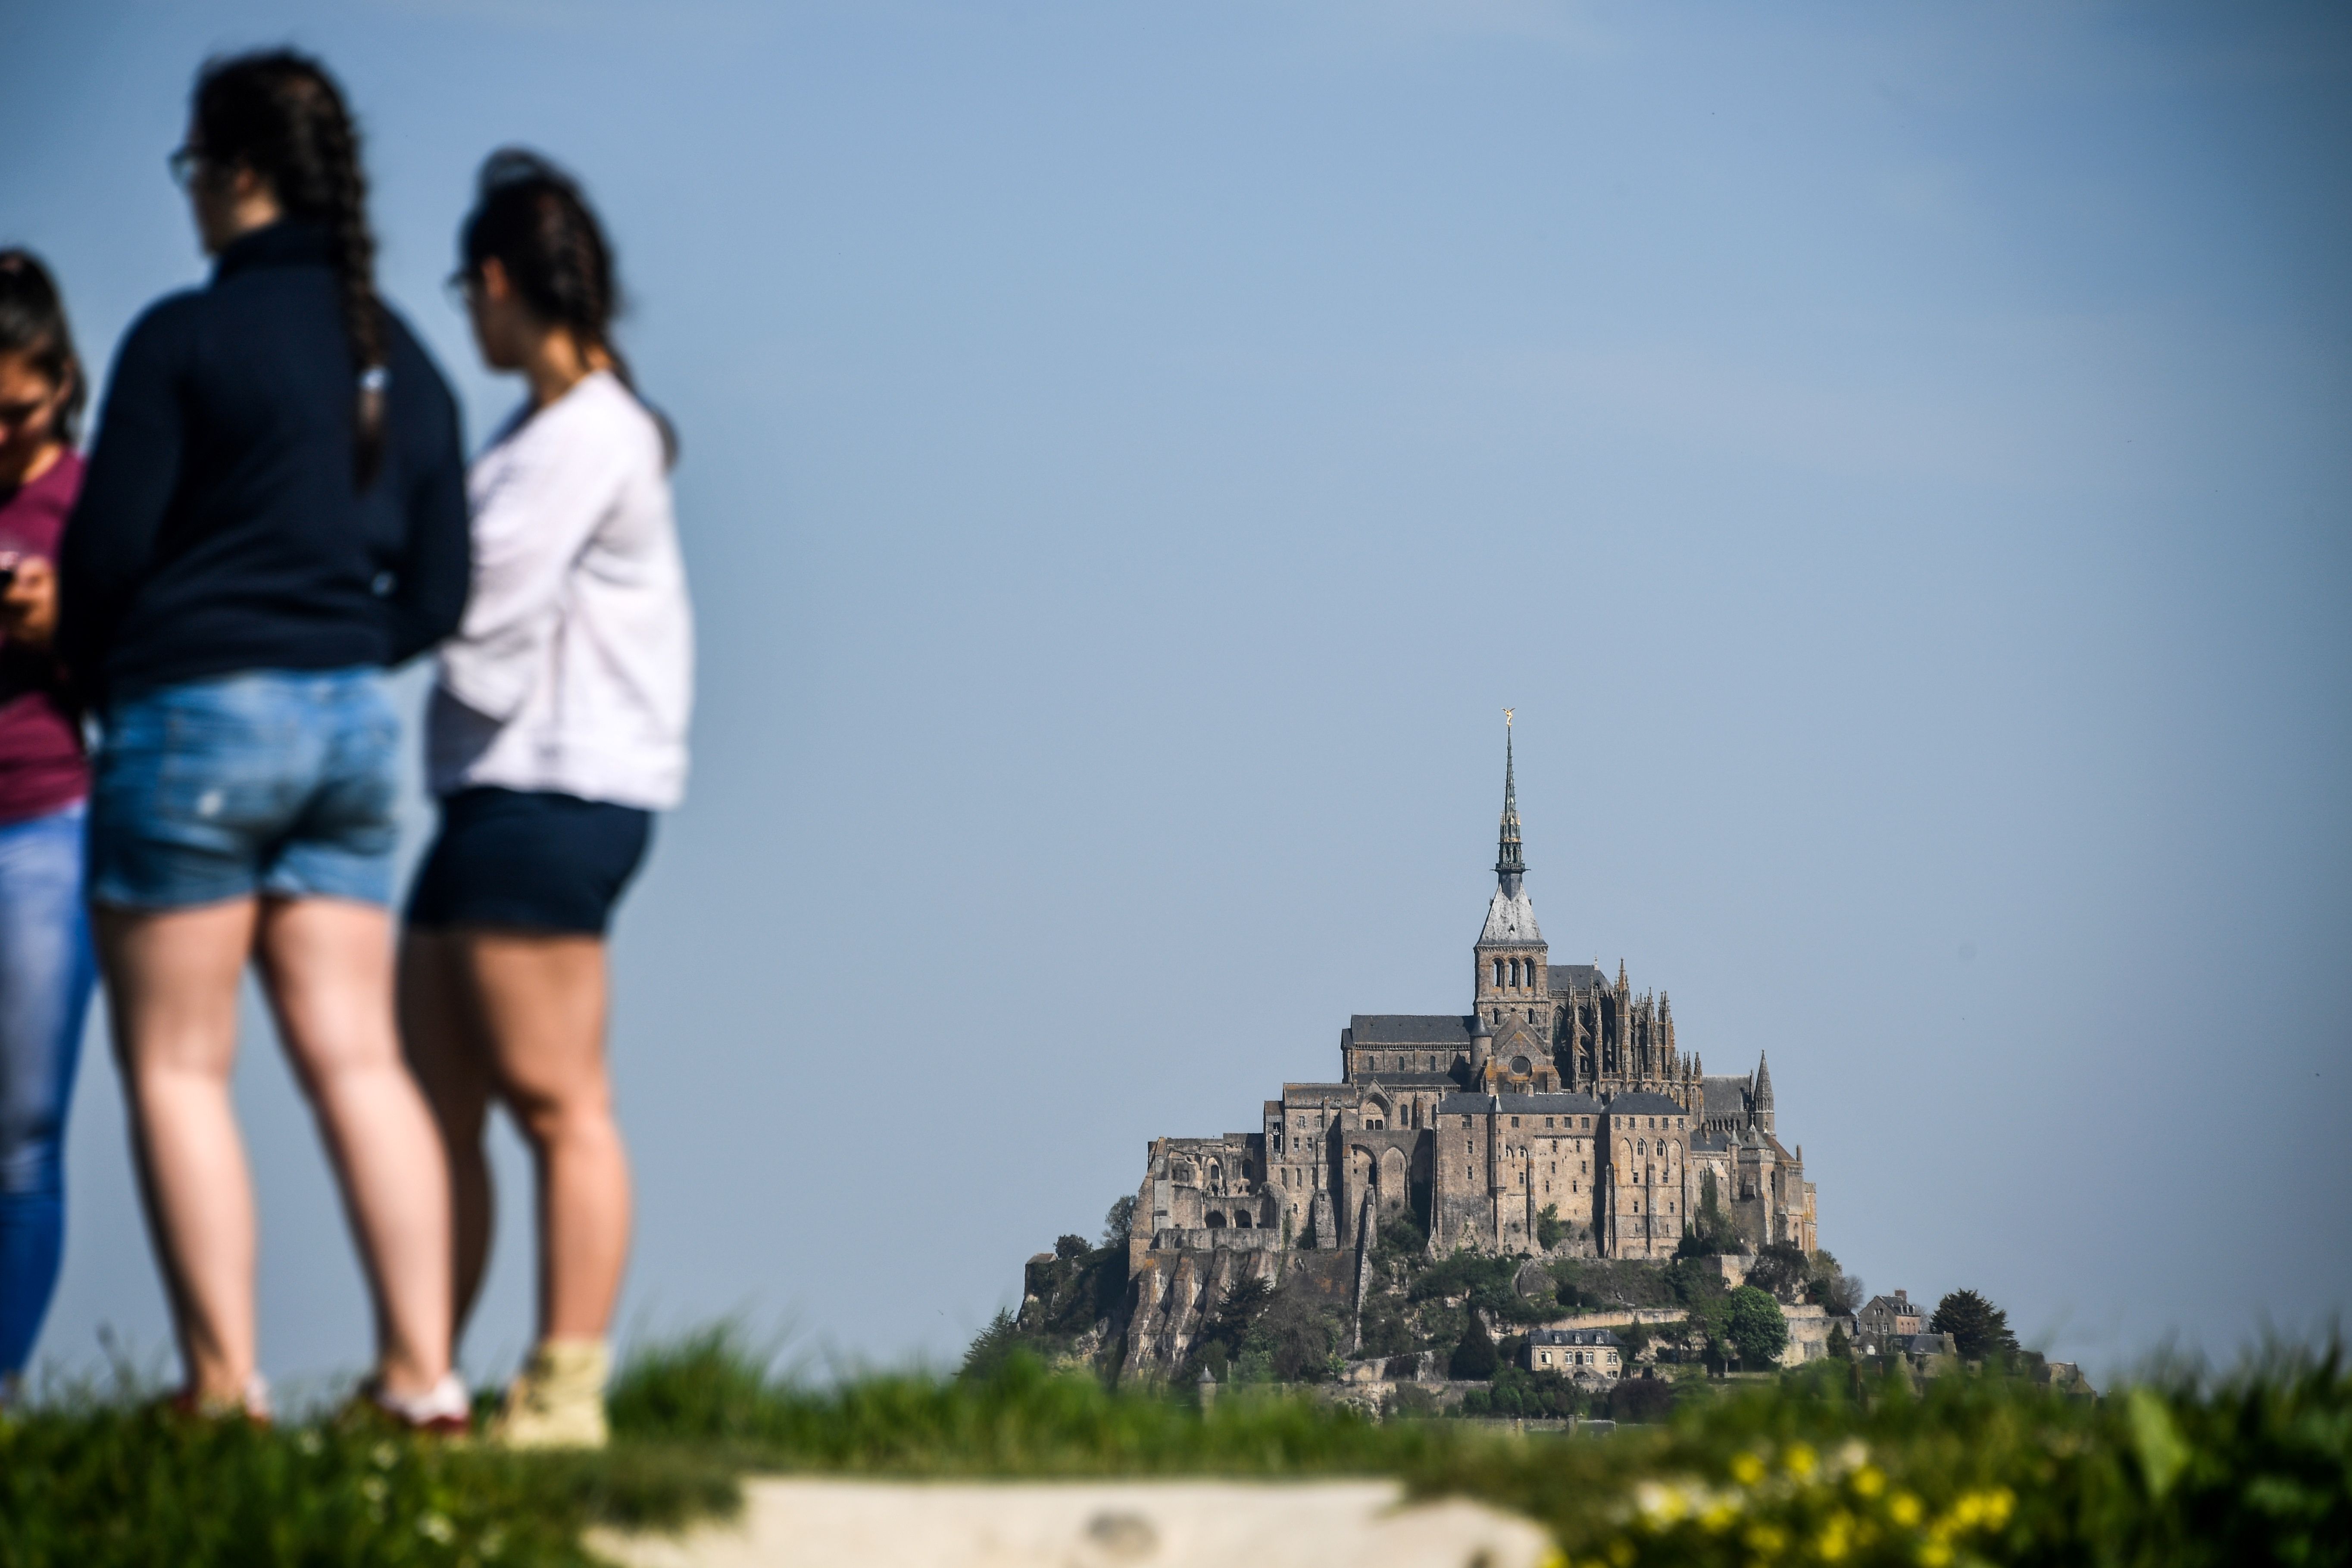 إجلاء سياح من كنيسة شمال فرنسا بسبب تهديد زائر